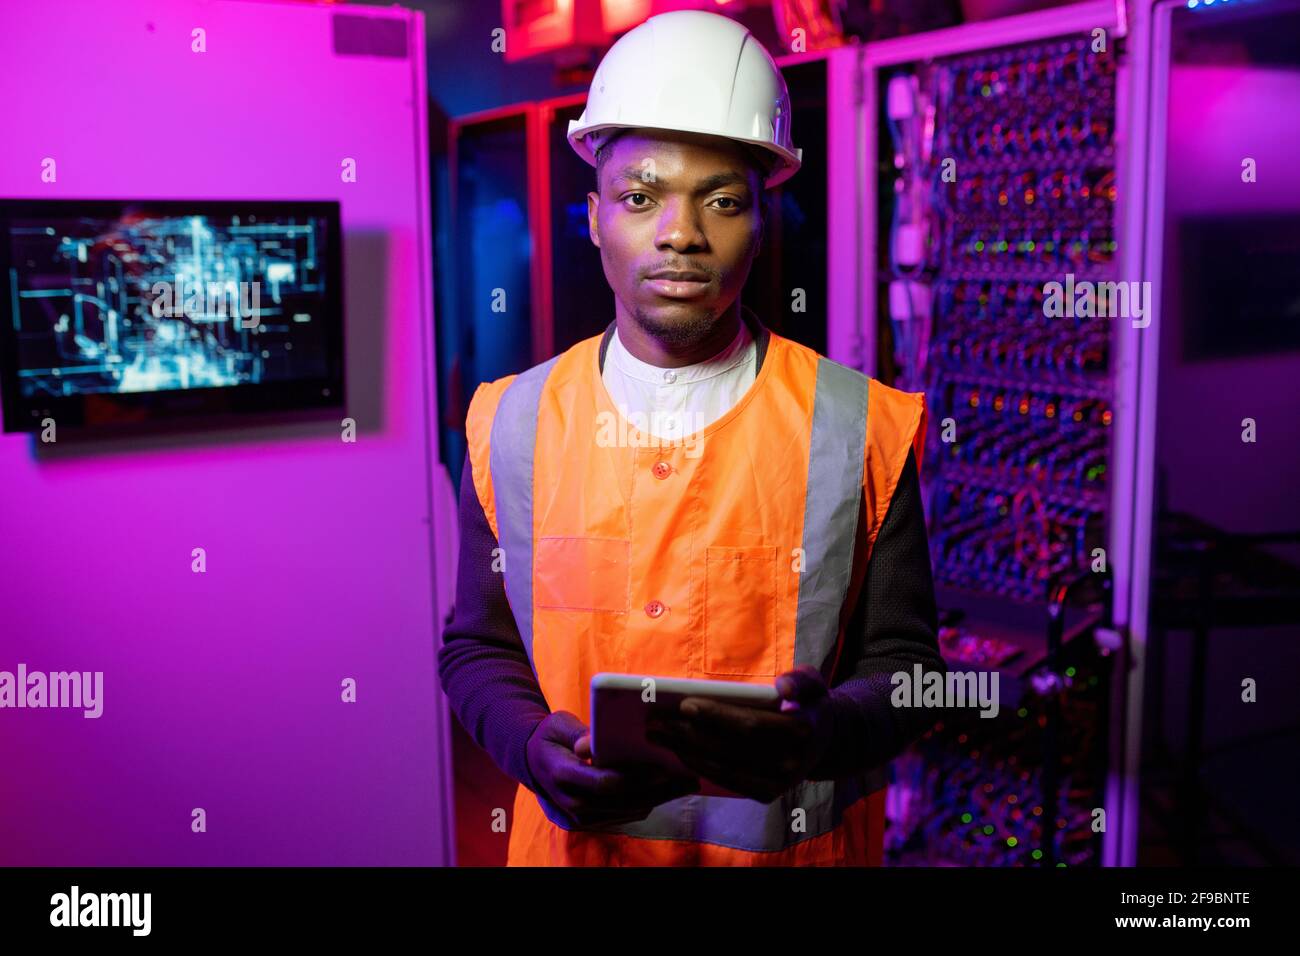 Ritratto di un serio e sicuro ingegnere di data center afro-americano giubbotto arancione e cappello bianco in piedi con tablet nel server camera con luce al neon Foto Stock